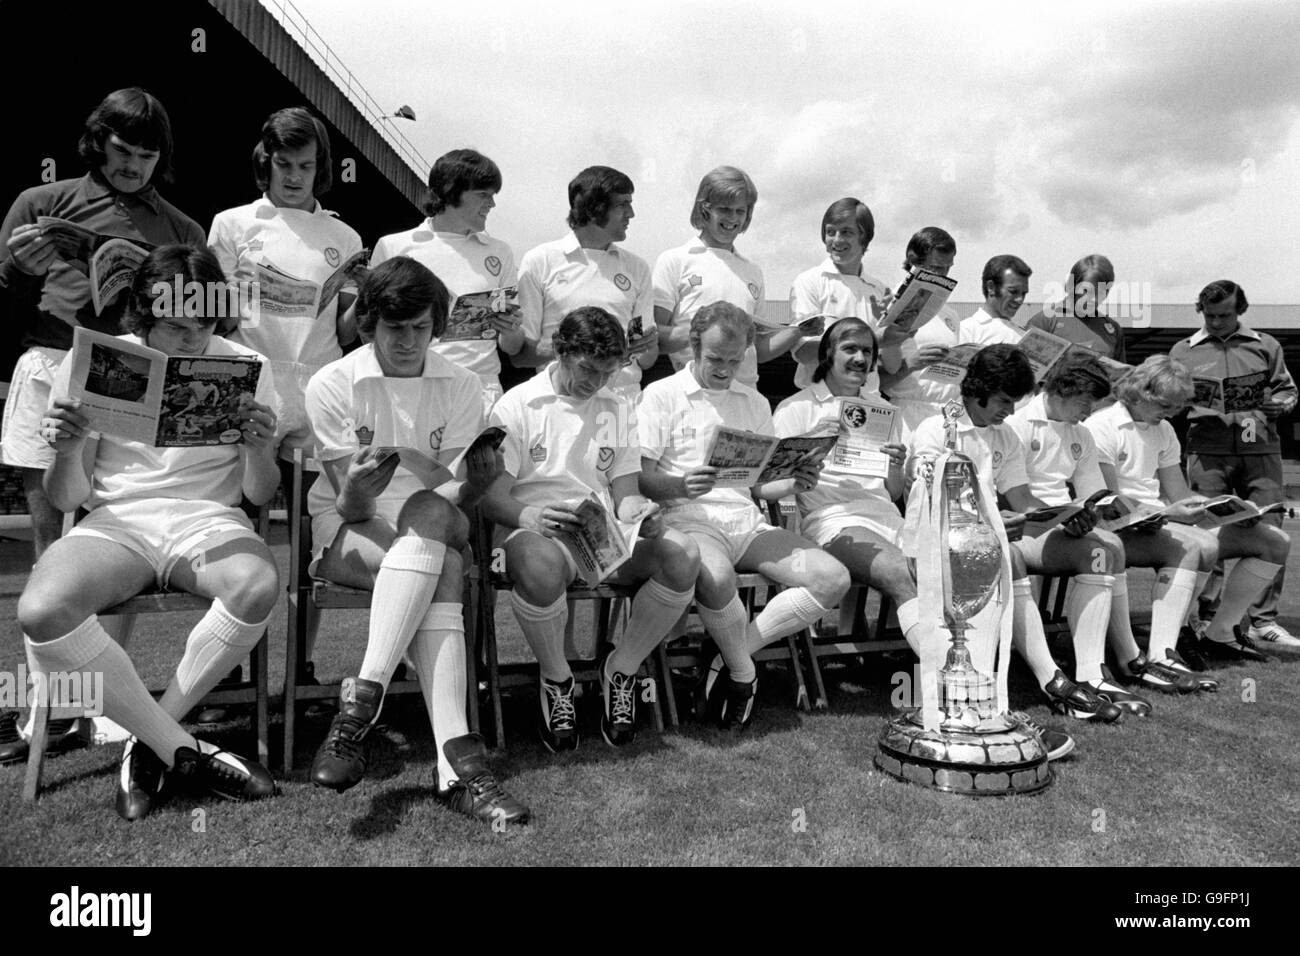 Das Leeds United Team las Kopien des Leeds United Matchday Programms, während sie warten, bis ein Gruppenbild mit dem League Championship Pokal gemacht wurde Stockfoto